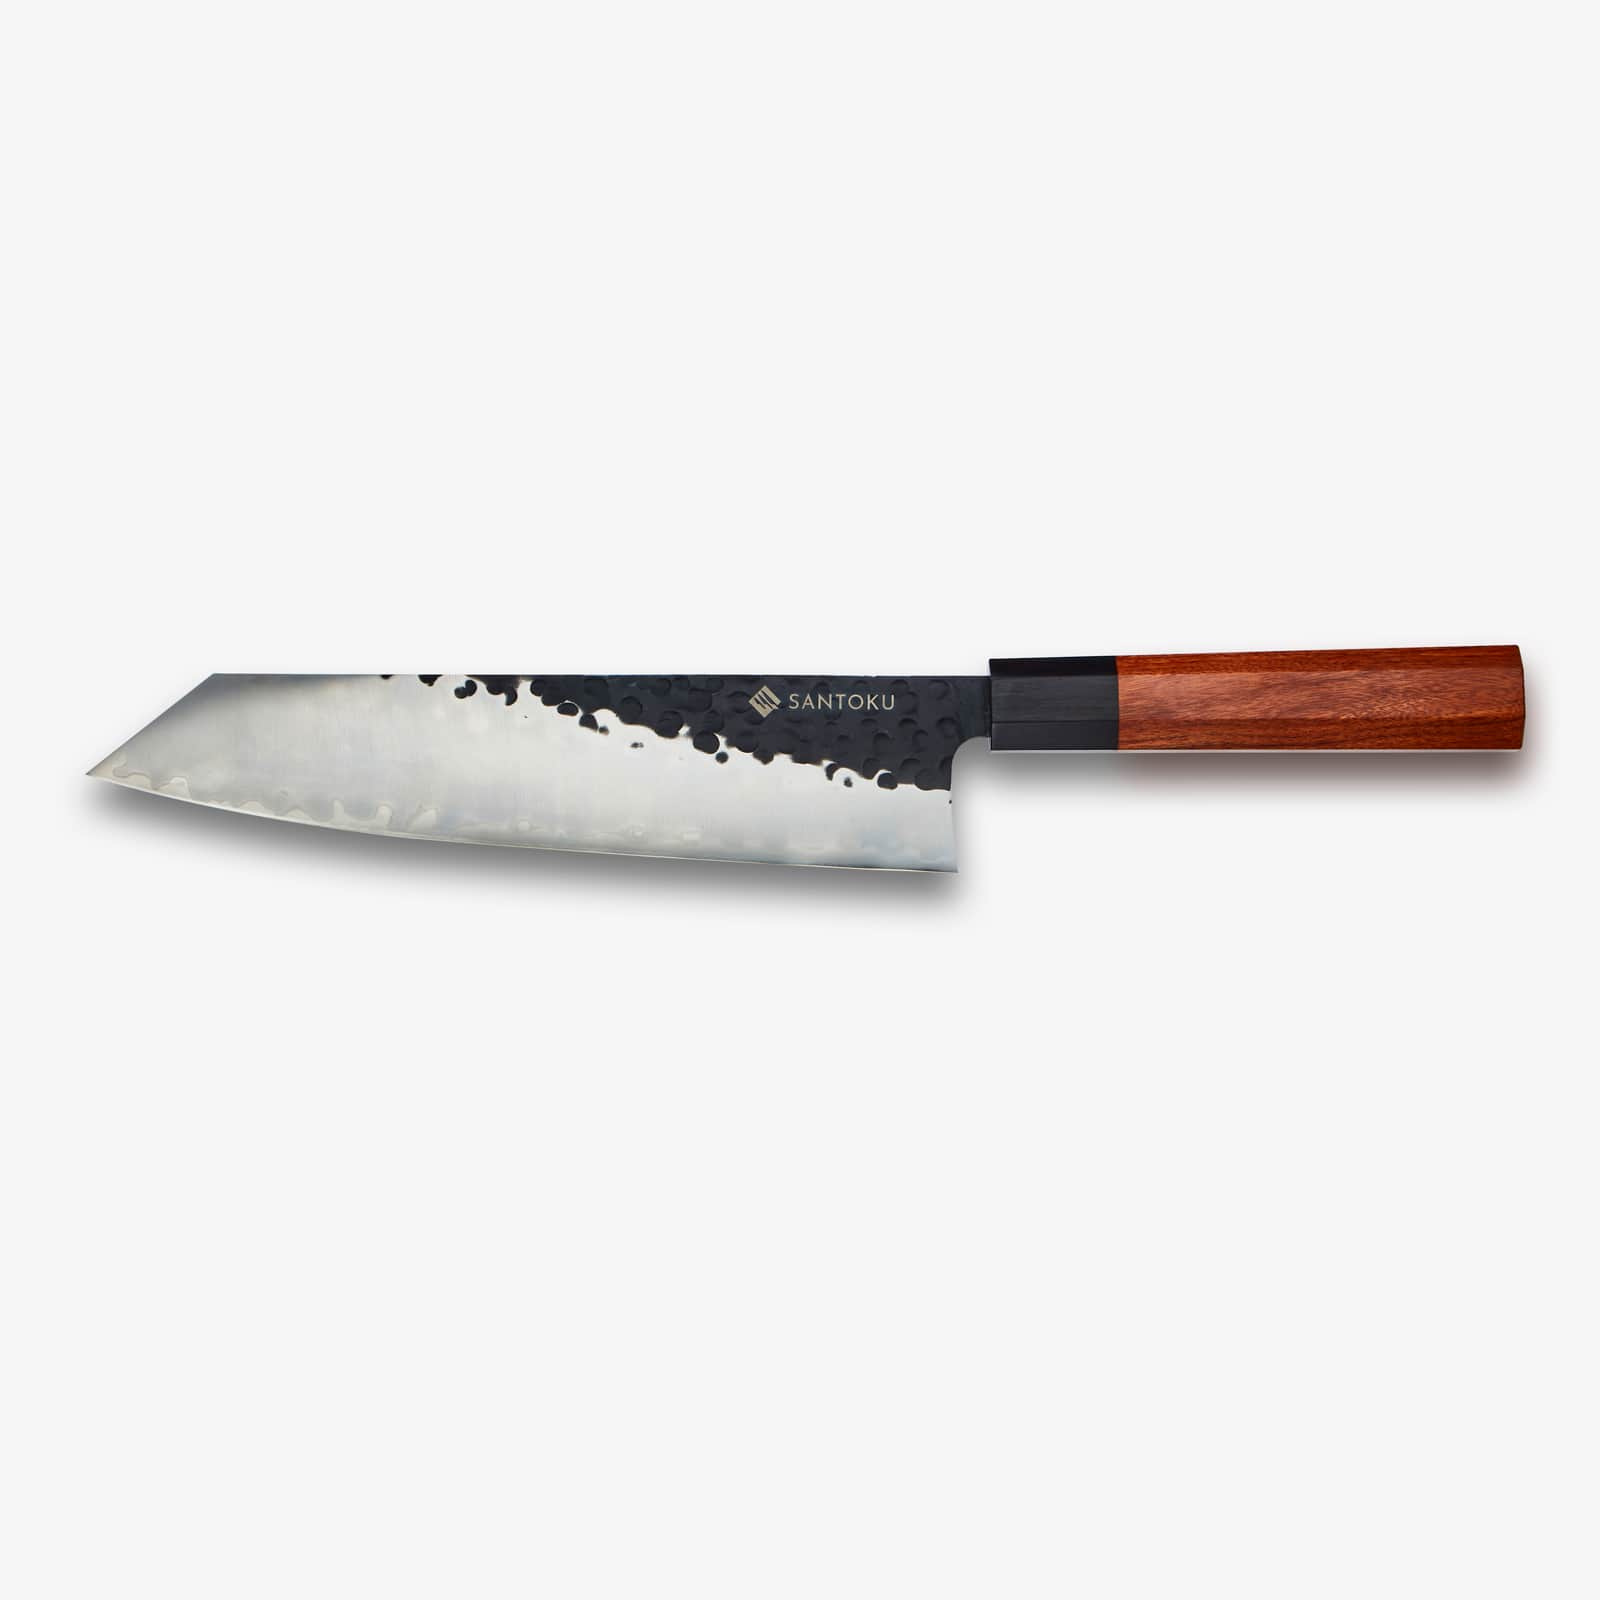 سكين ميناتو كيريتسوكي